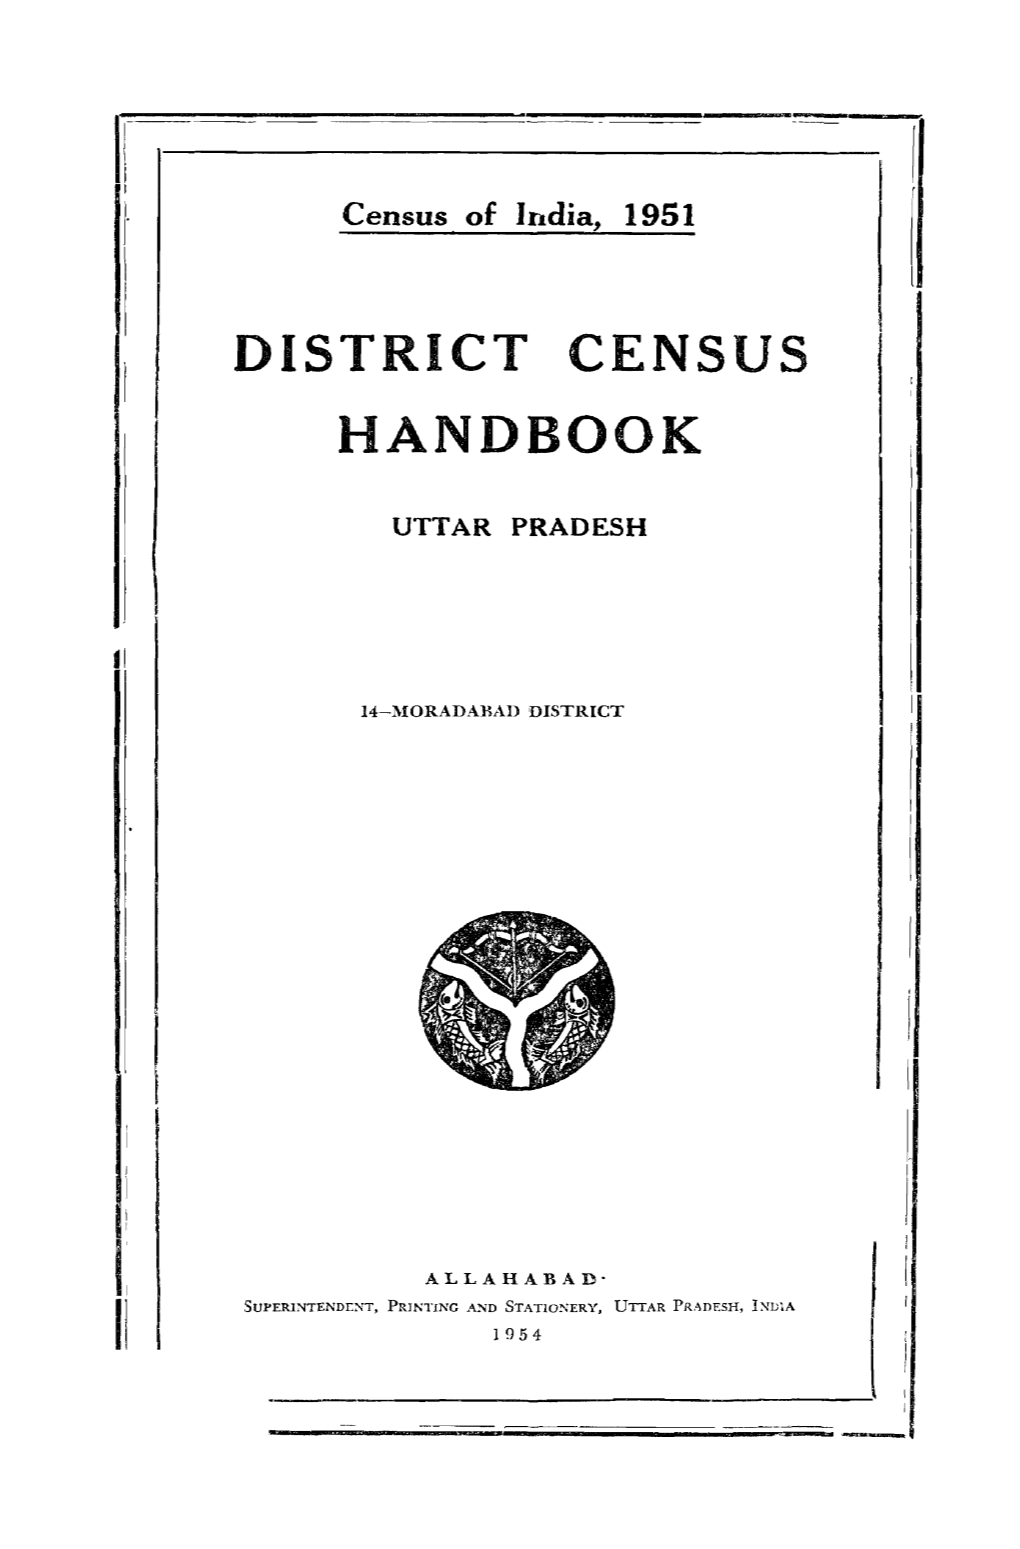 District Census Handbook, 14-Moradabad, Uttar Pradesh